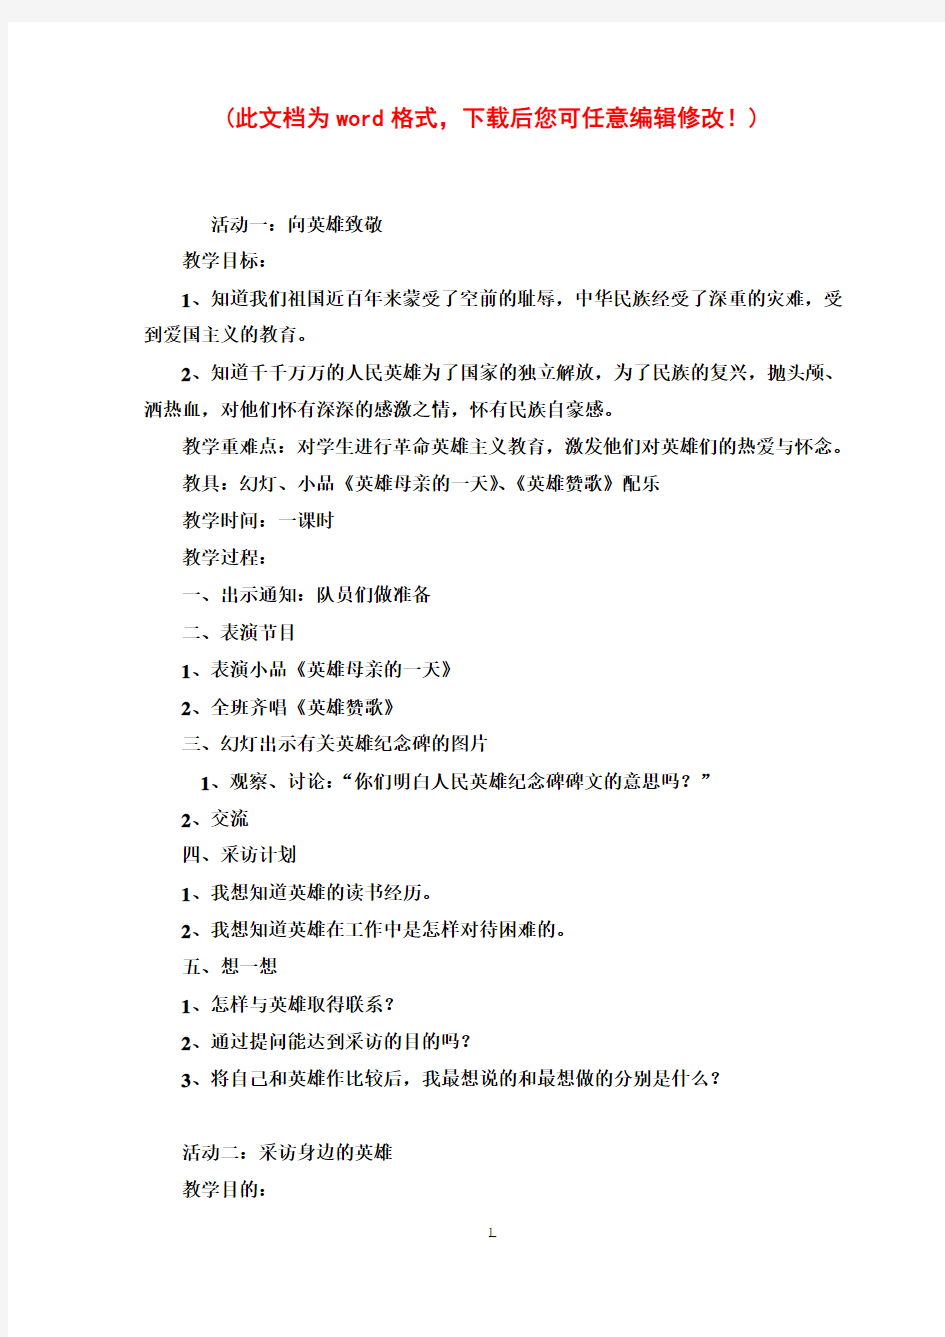 【完整打印版】小学五年级下册综合实践活动教案(上海科技教育出版社)1